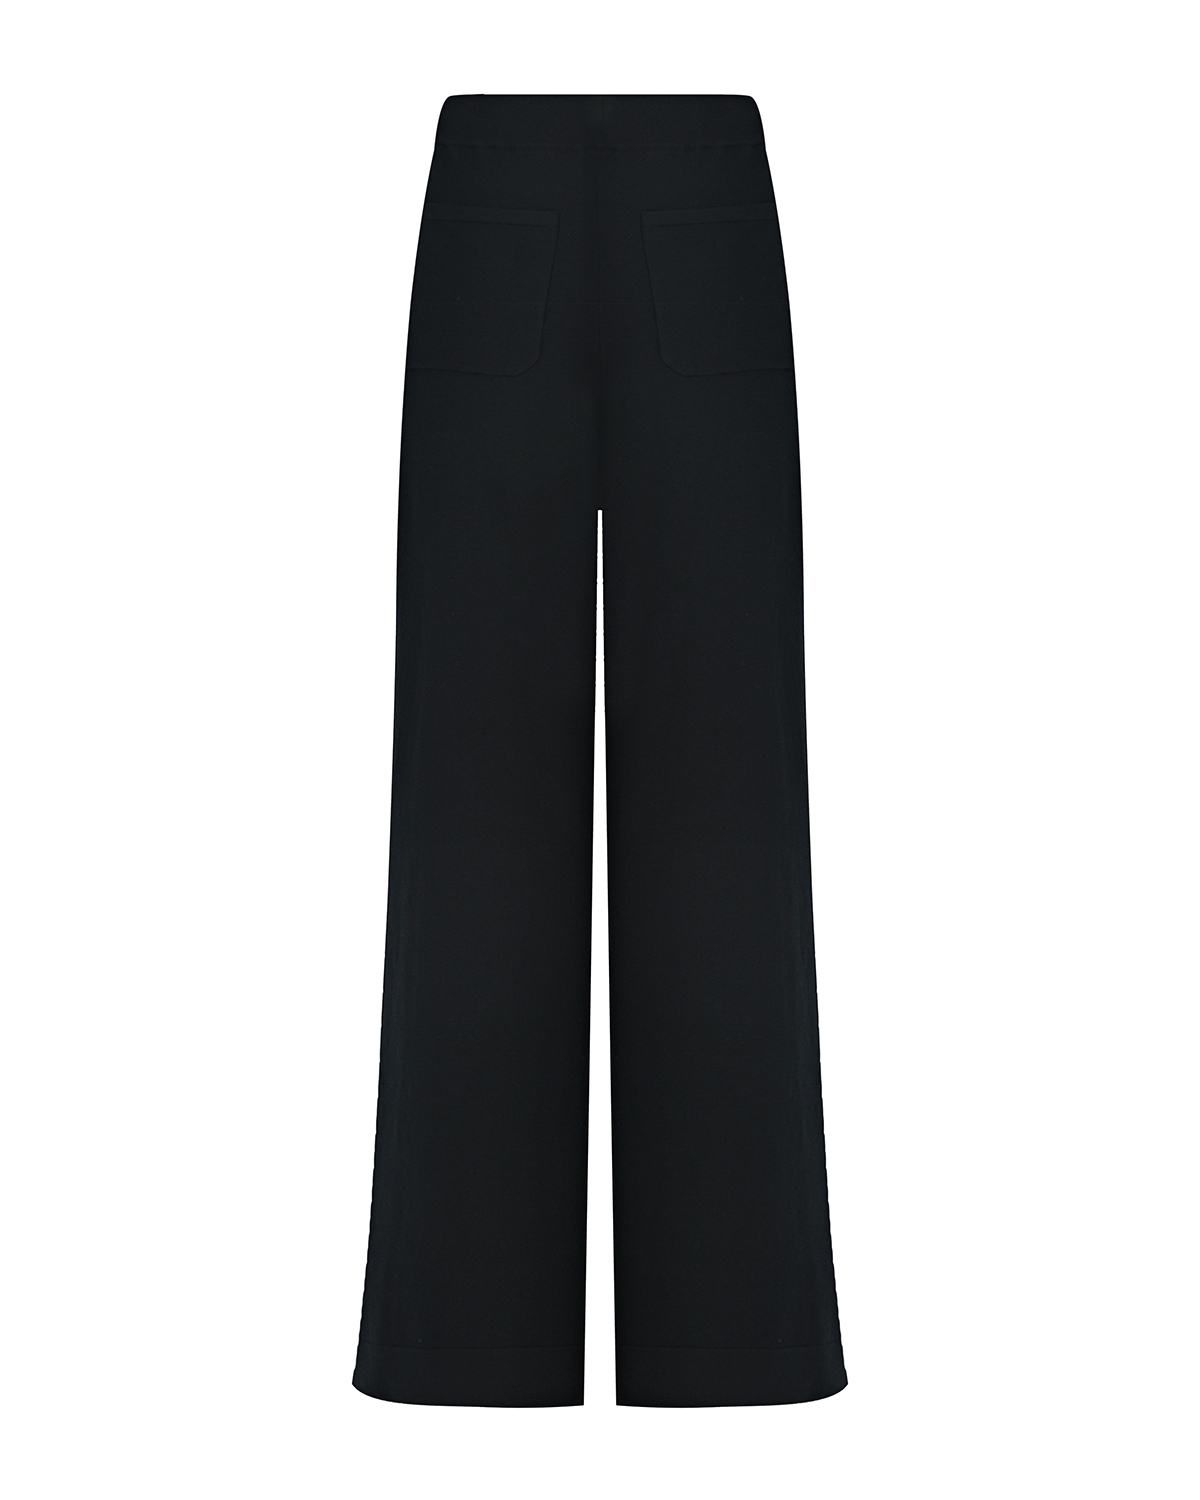 Черные трикотажные брюки-палаццо Dorothee Schumacher, размер 44, цвет черный - фото 5